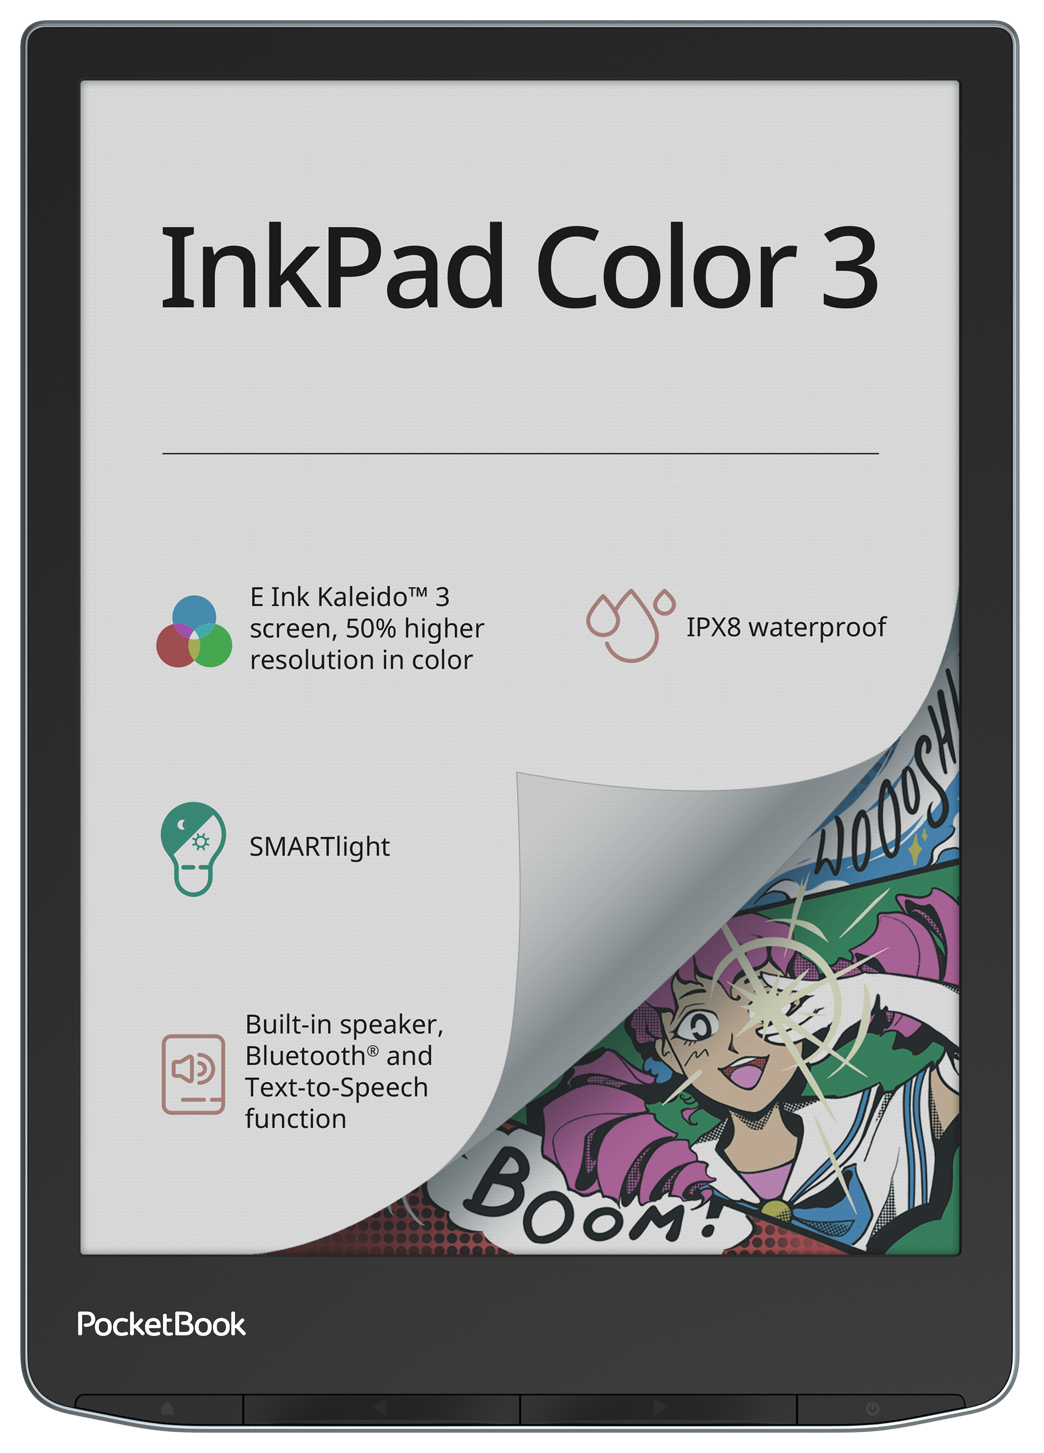 PocketBook 743K3 InkPad Color 3